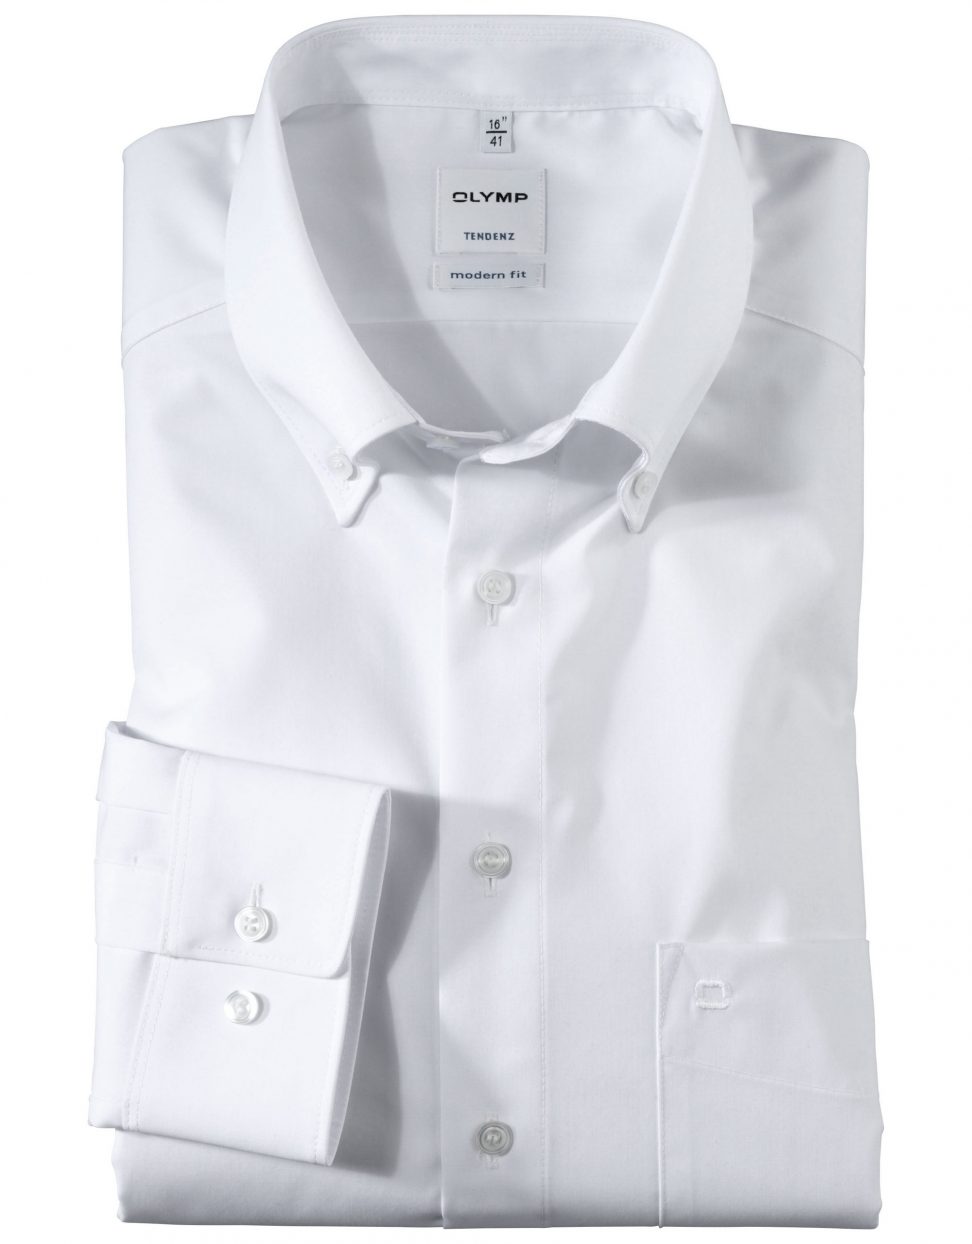 Koszula OLYMP Tendenz, modern fit, biała/ Button-down/ 07126400